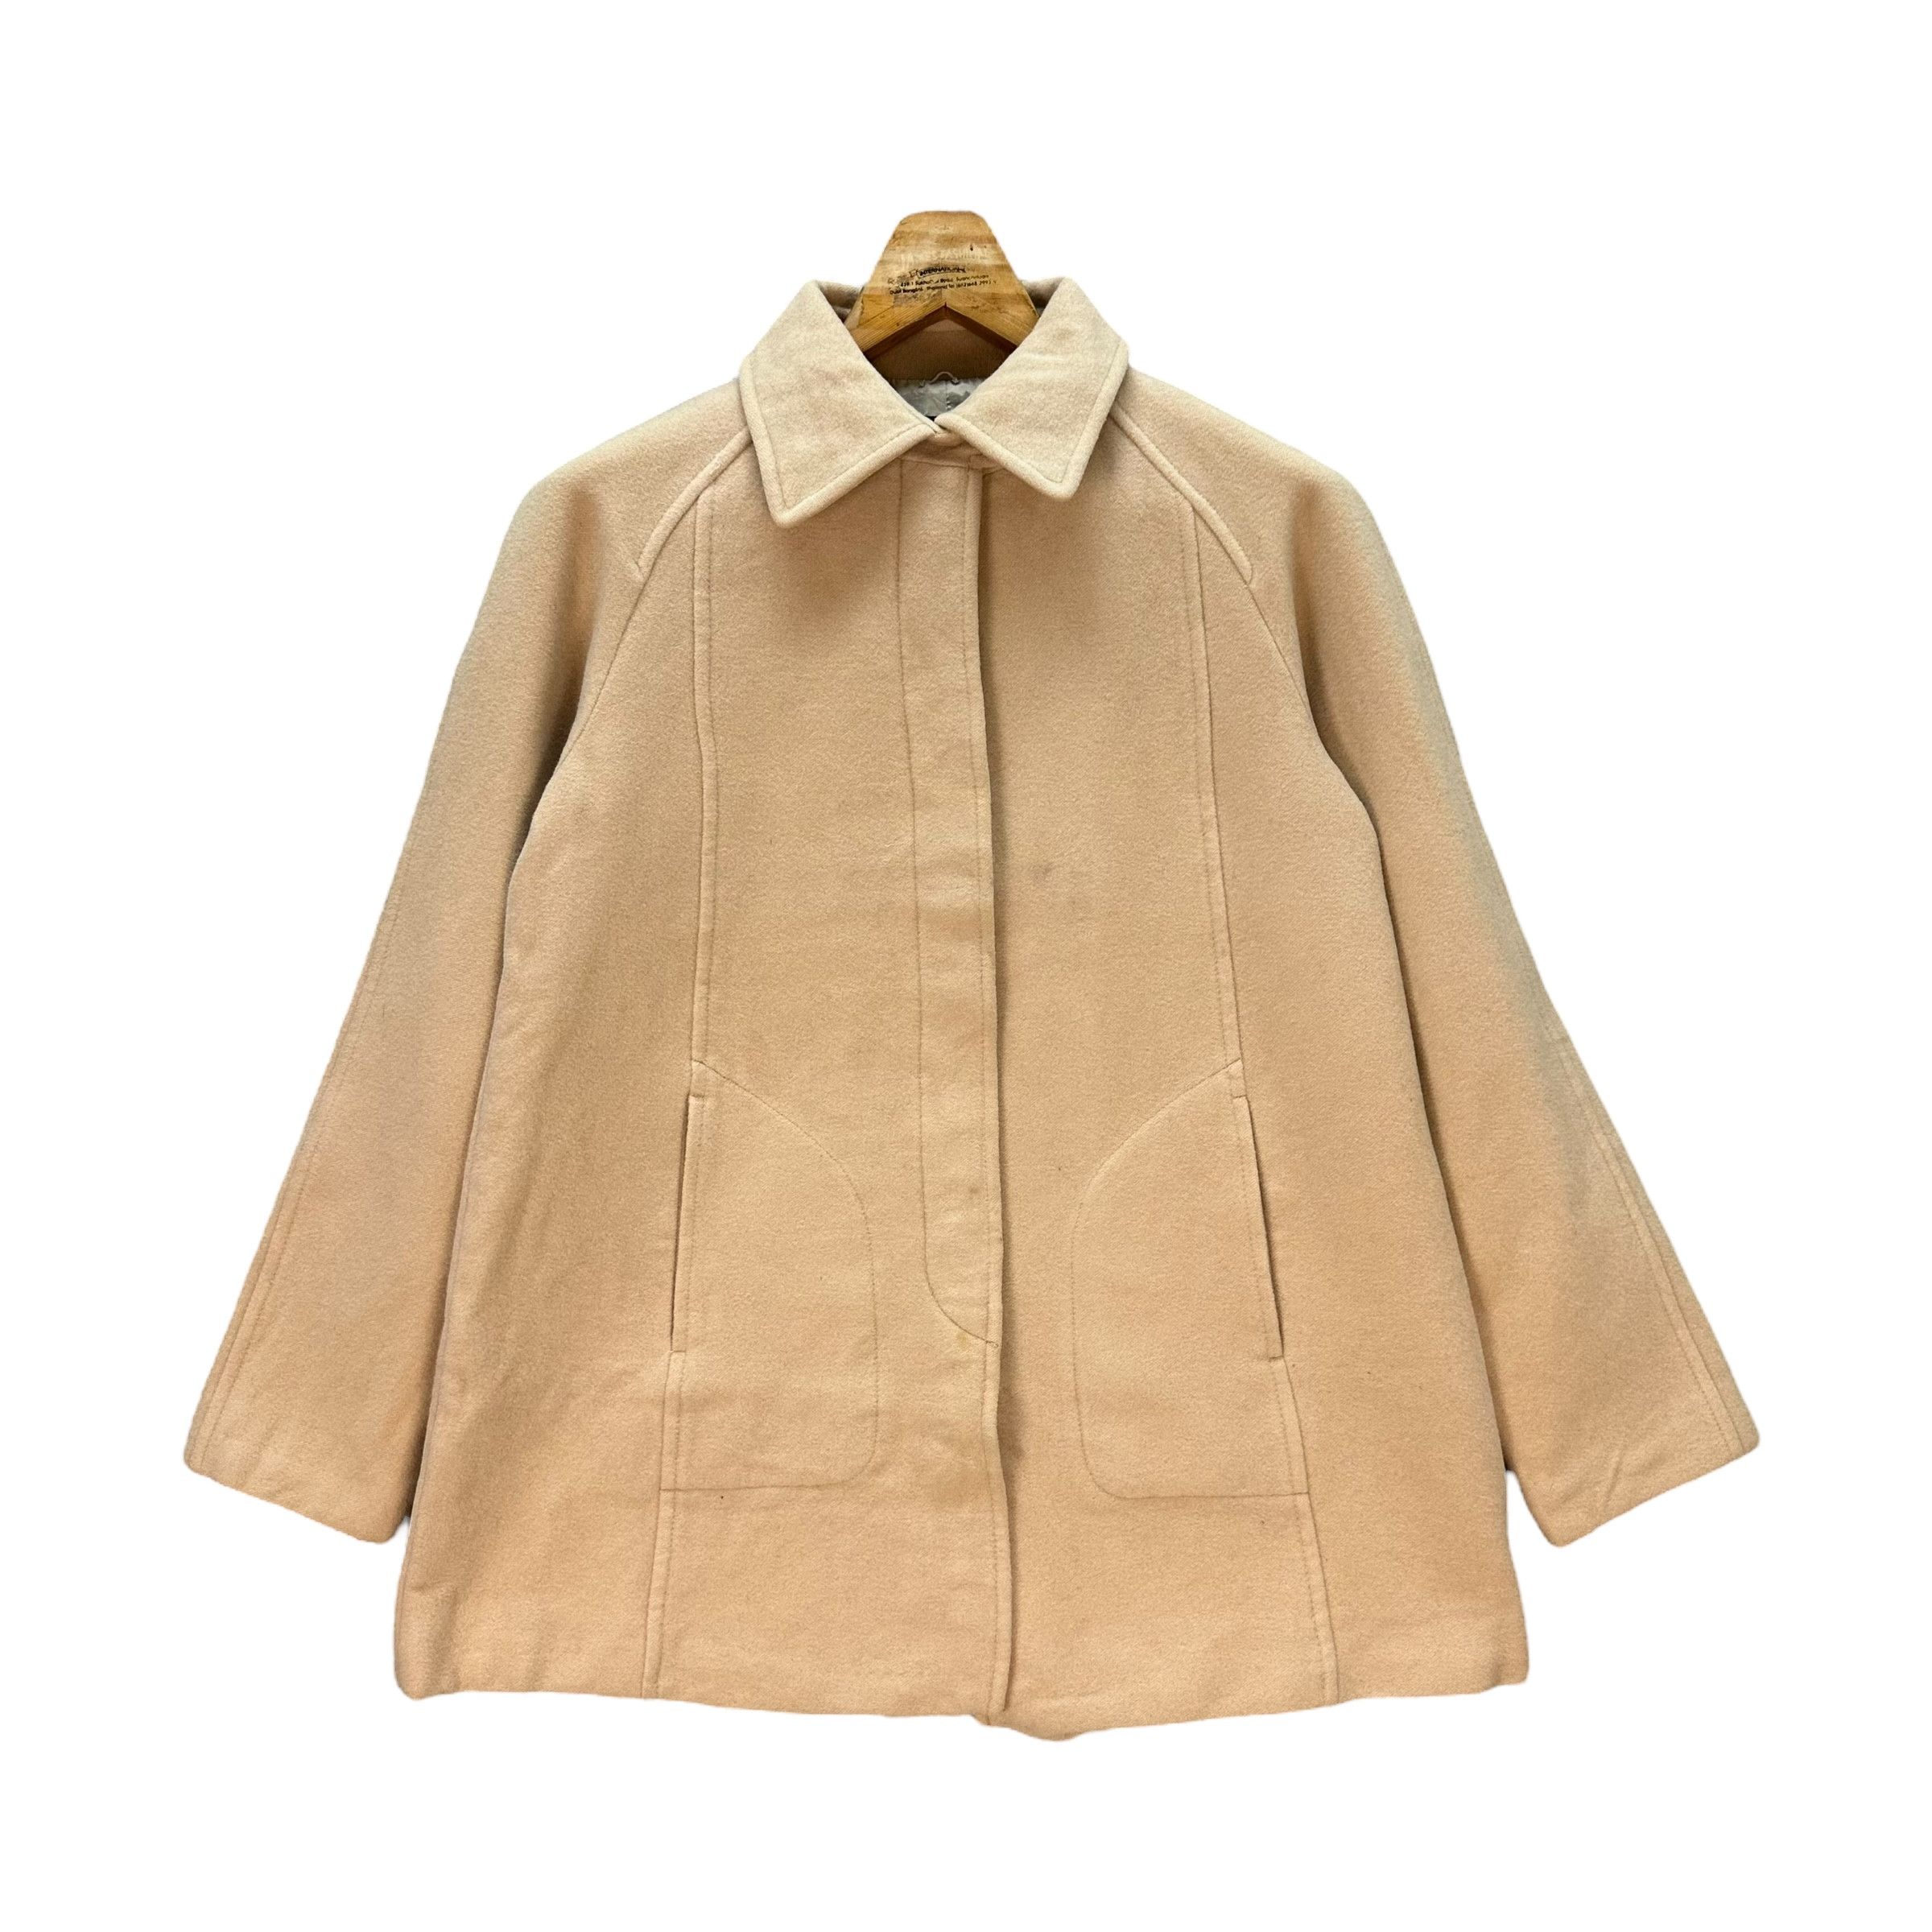 Vintage - Sonia Rykiel Wool Blend Coat Jacket #9117-58 - 1